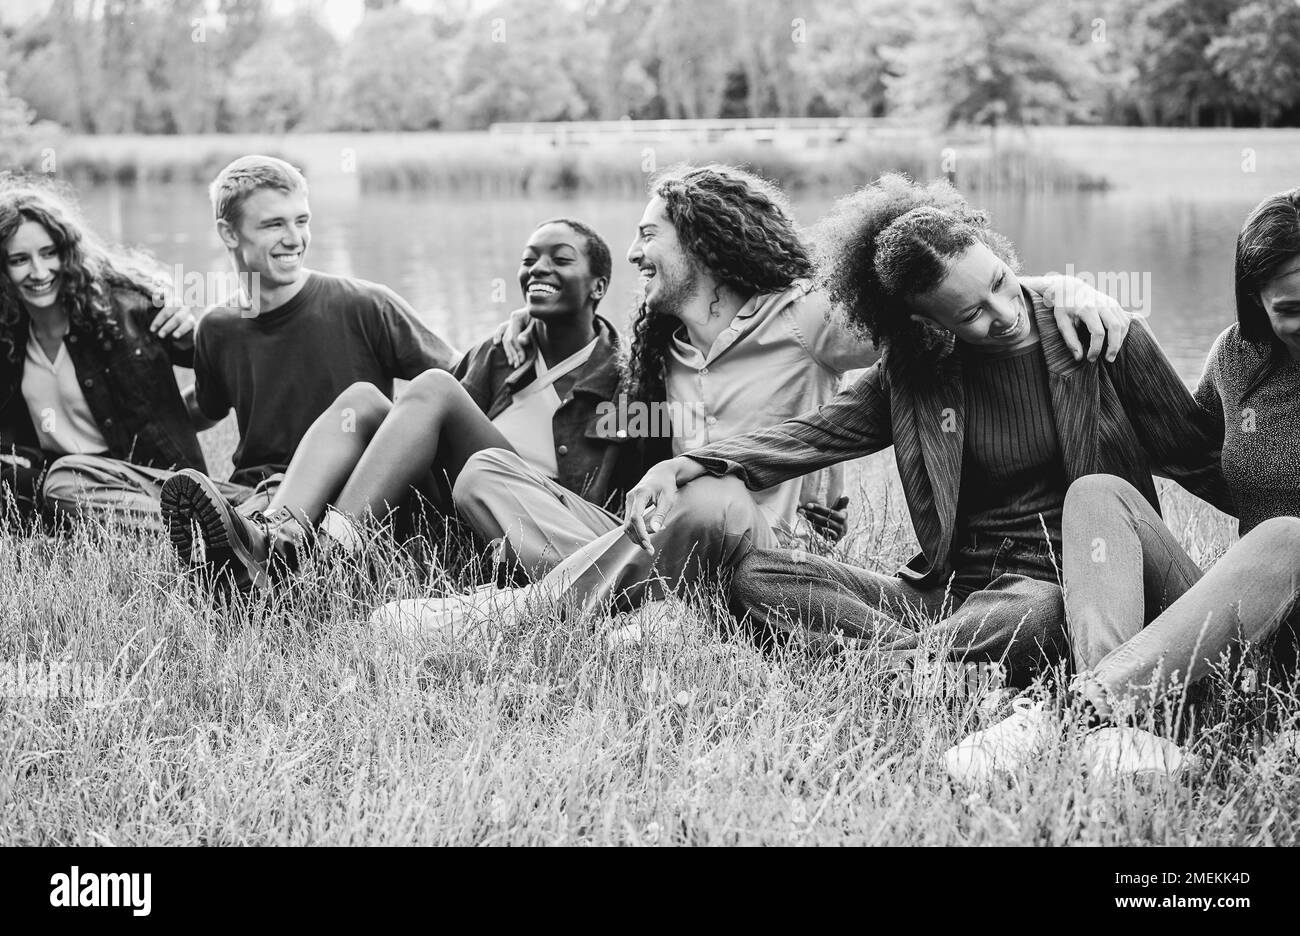 Multiethnische Freunde, die Spaß haben, draußen auf dem Rasen zu sitzen - Fokus auf das rechte afrikanische Mädchengesicht - Schwarz-Weiß-Bearbeitung Stockfoto